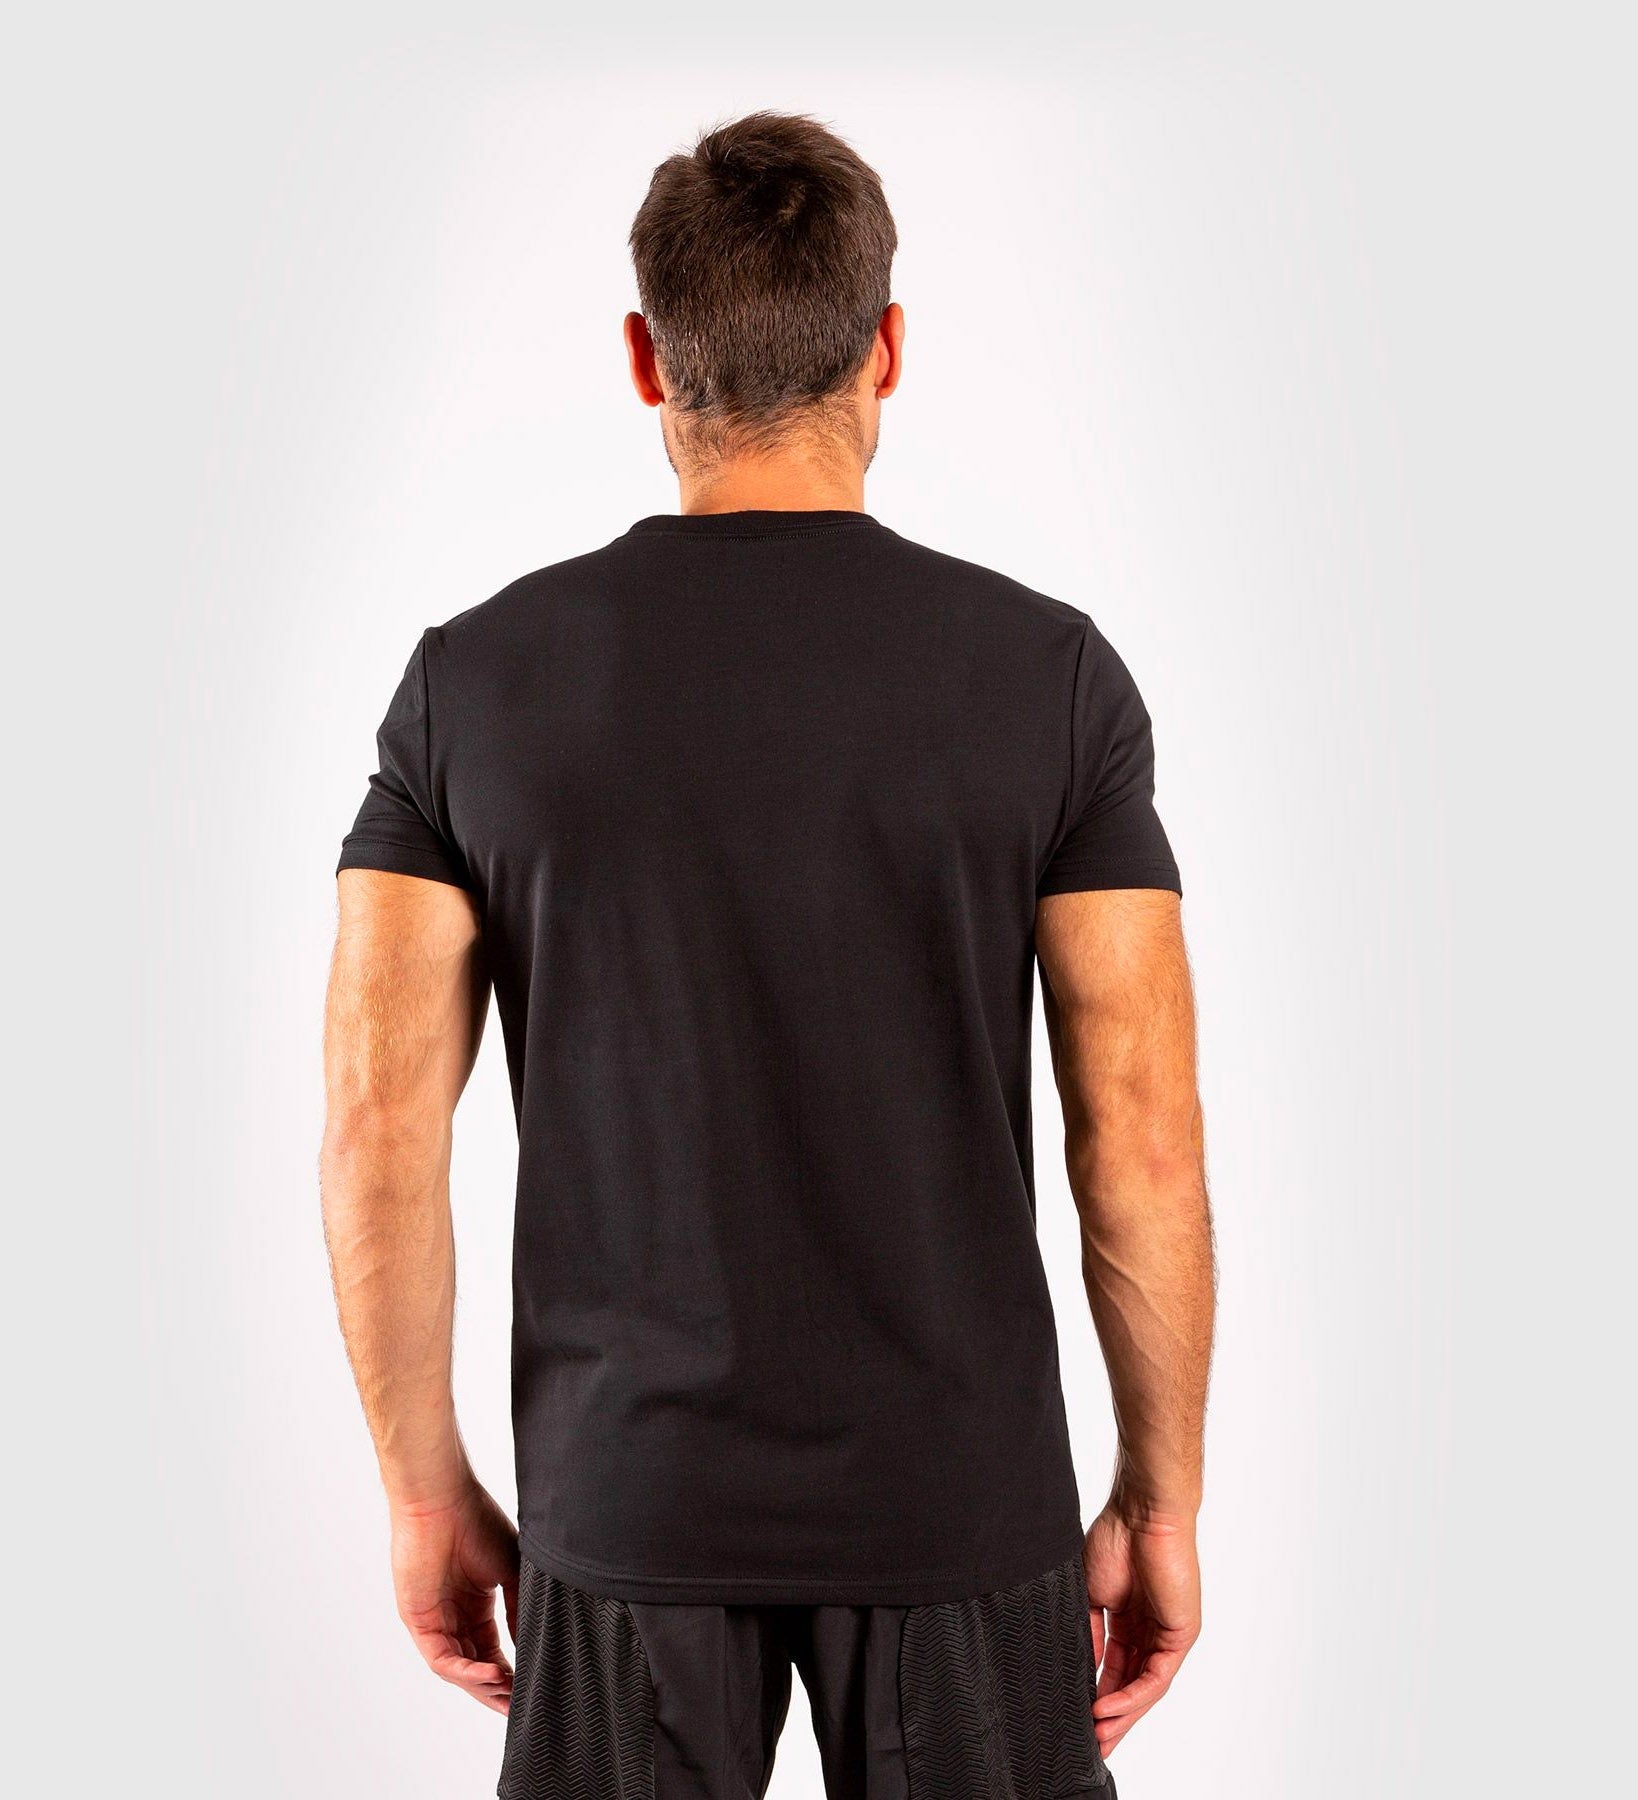 Venum T-shirt Classic - Zwart/Wit - T-Shirt